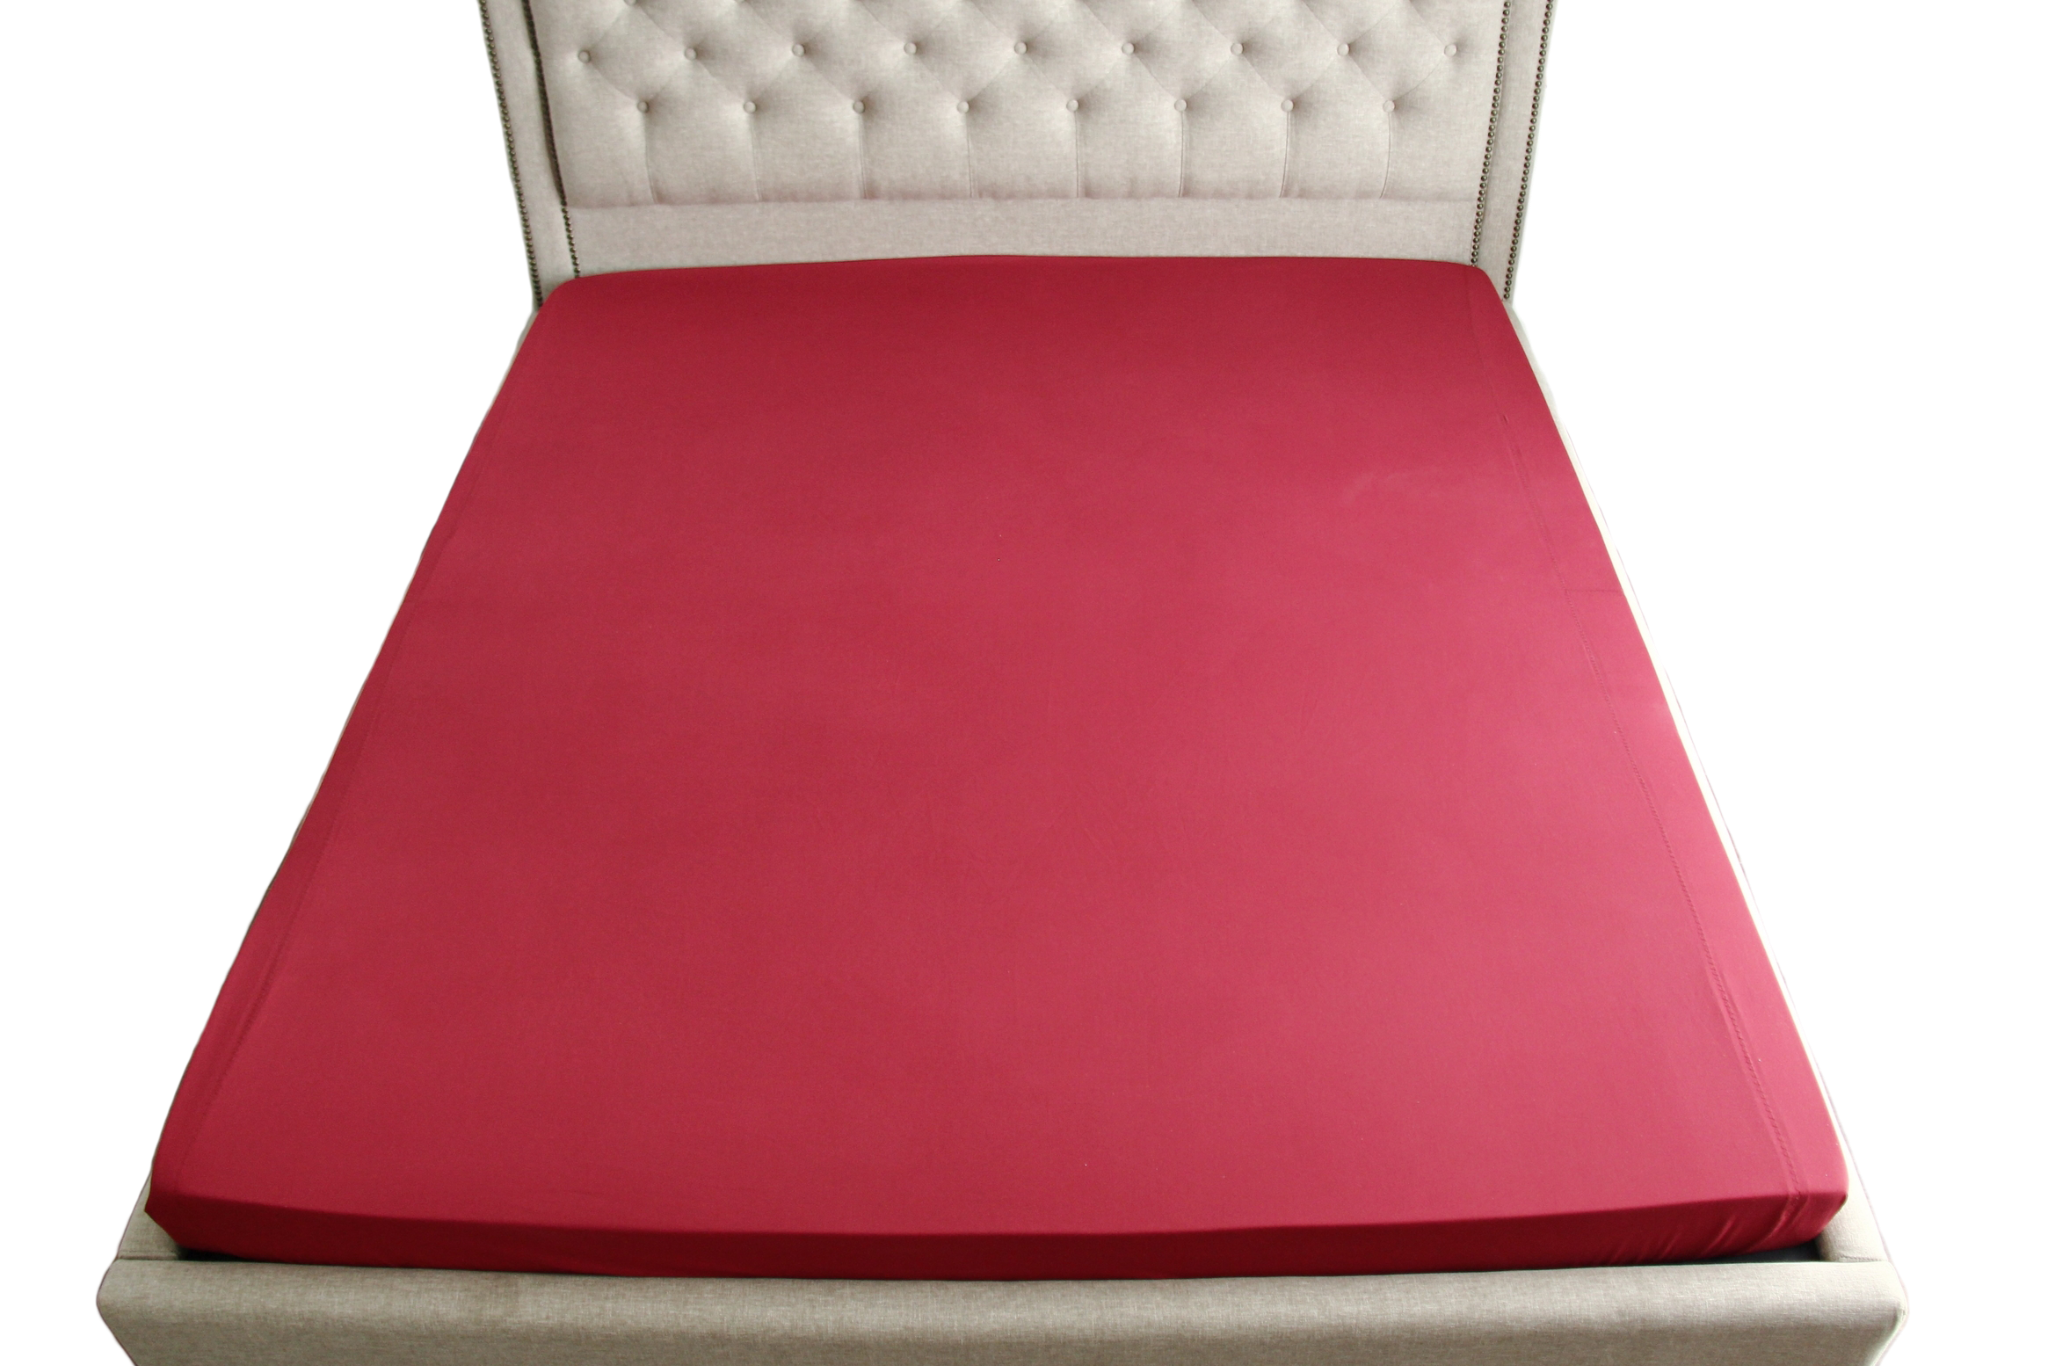  Ga giường Premium Cotton đỏ bordeaux 